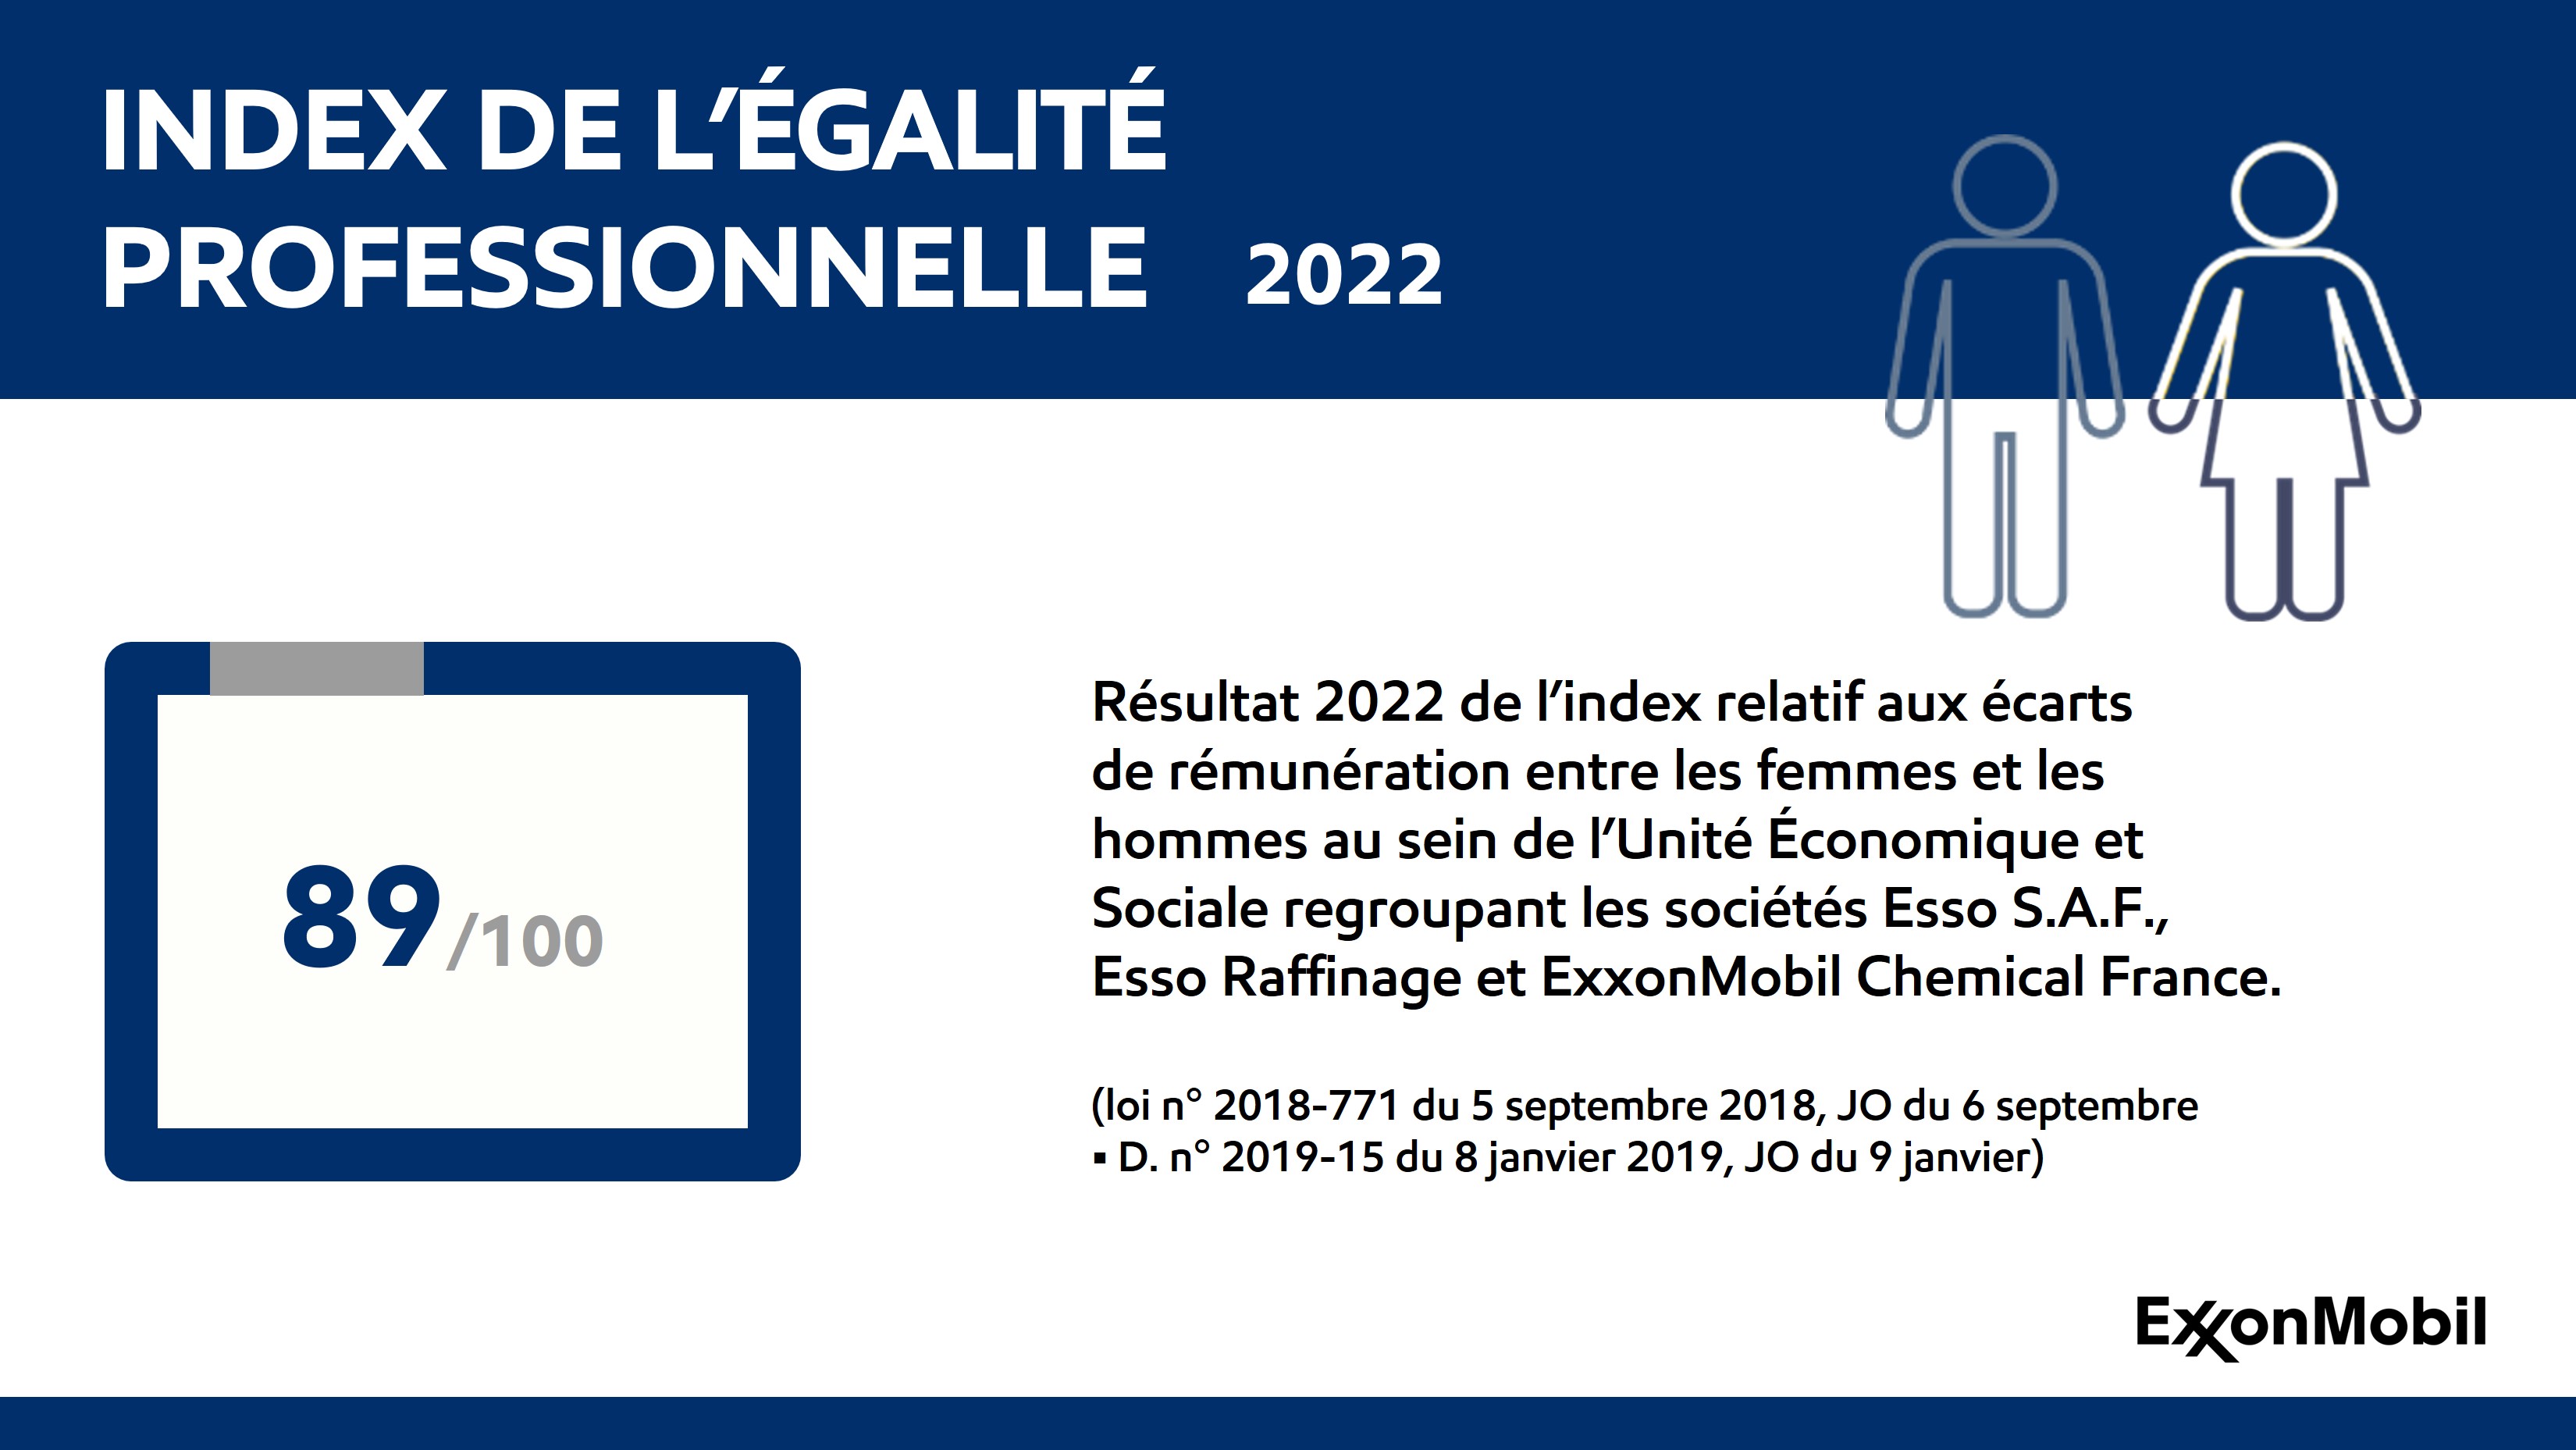 Index de l'égalité professionnelle femmes hommes 2022 des sociétés du groupe ExxonMobil en France